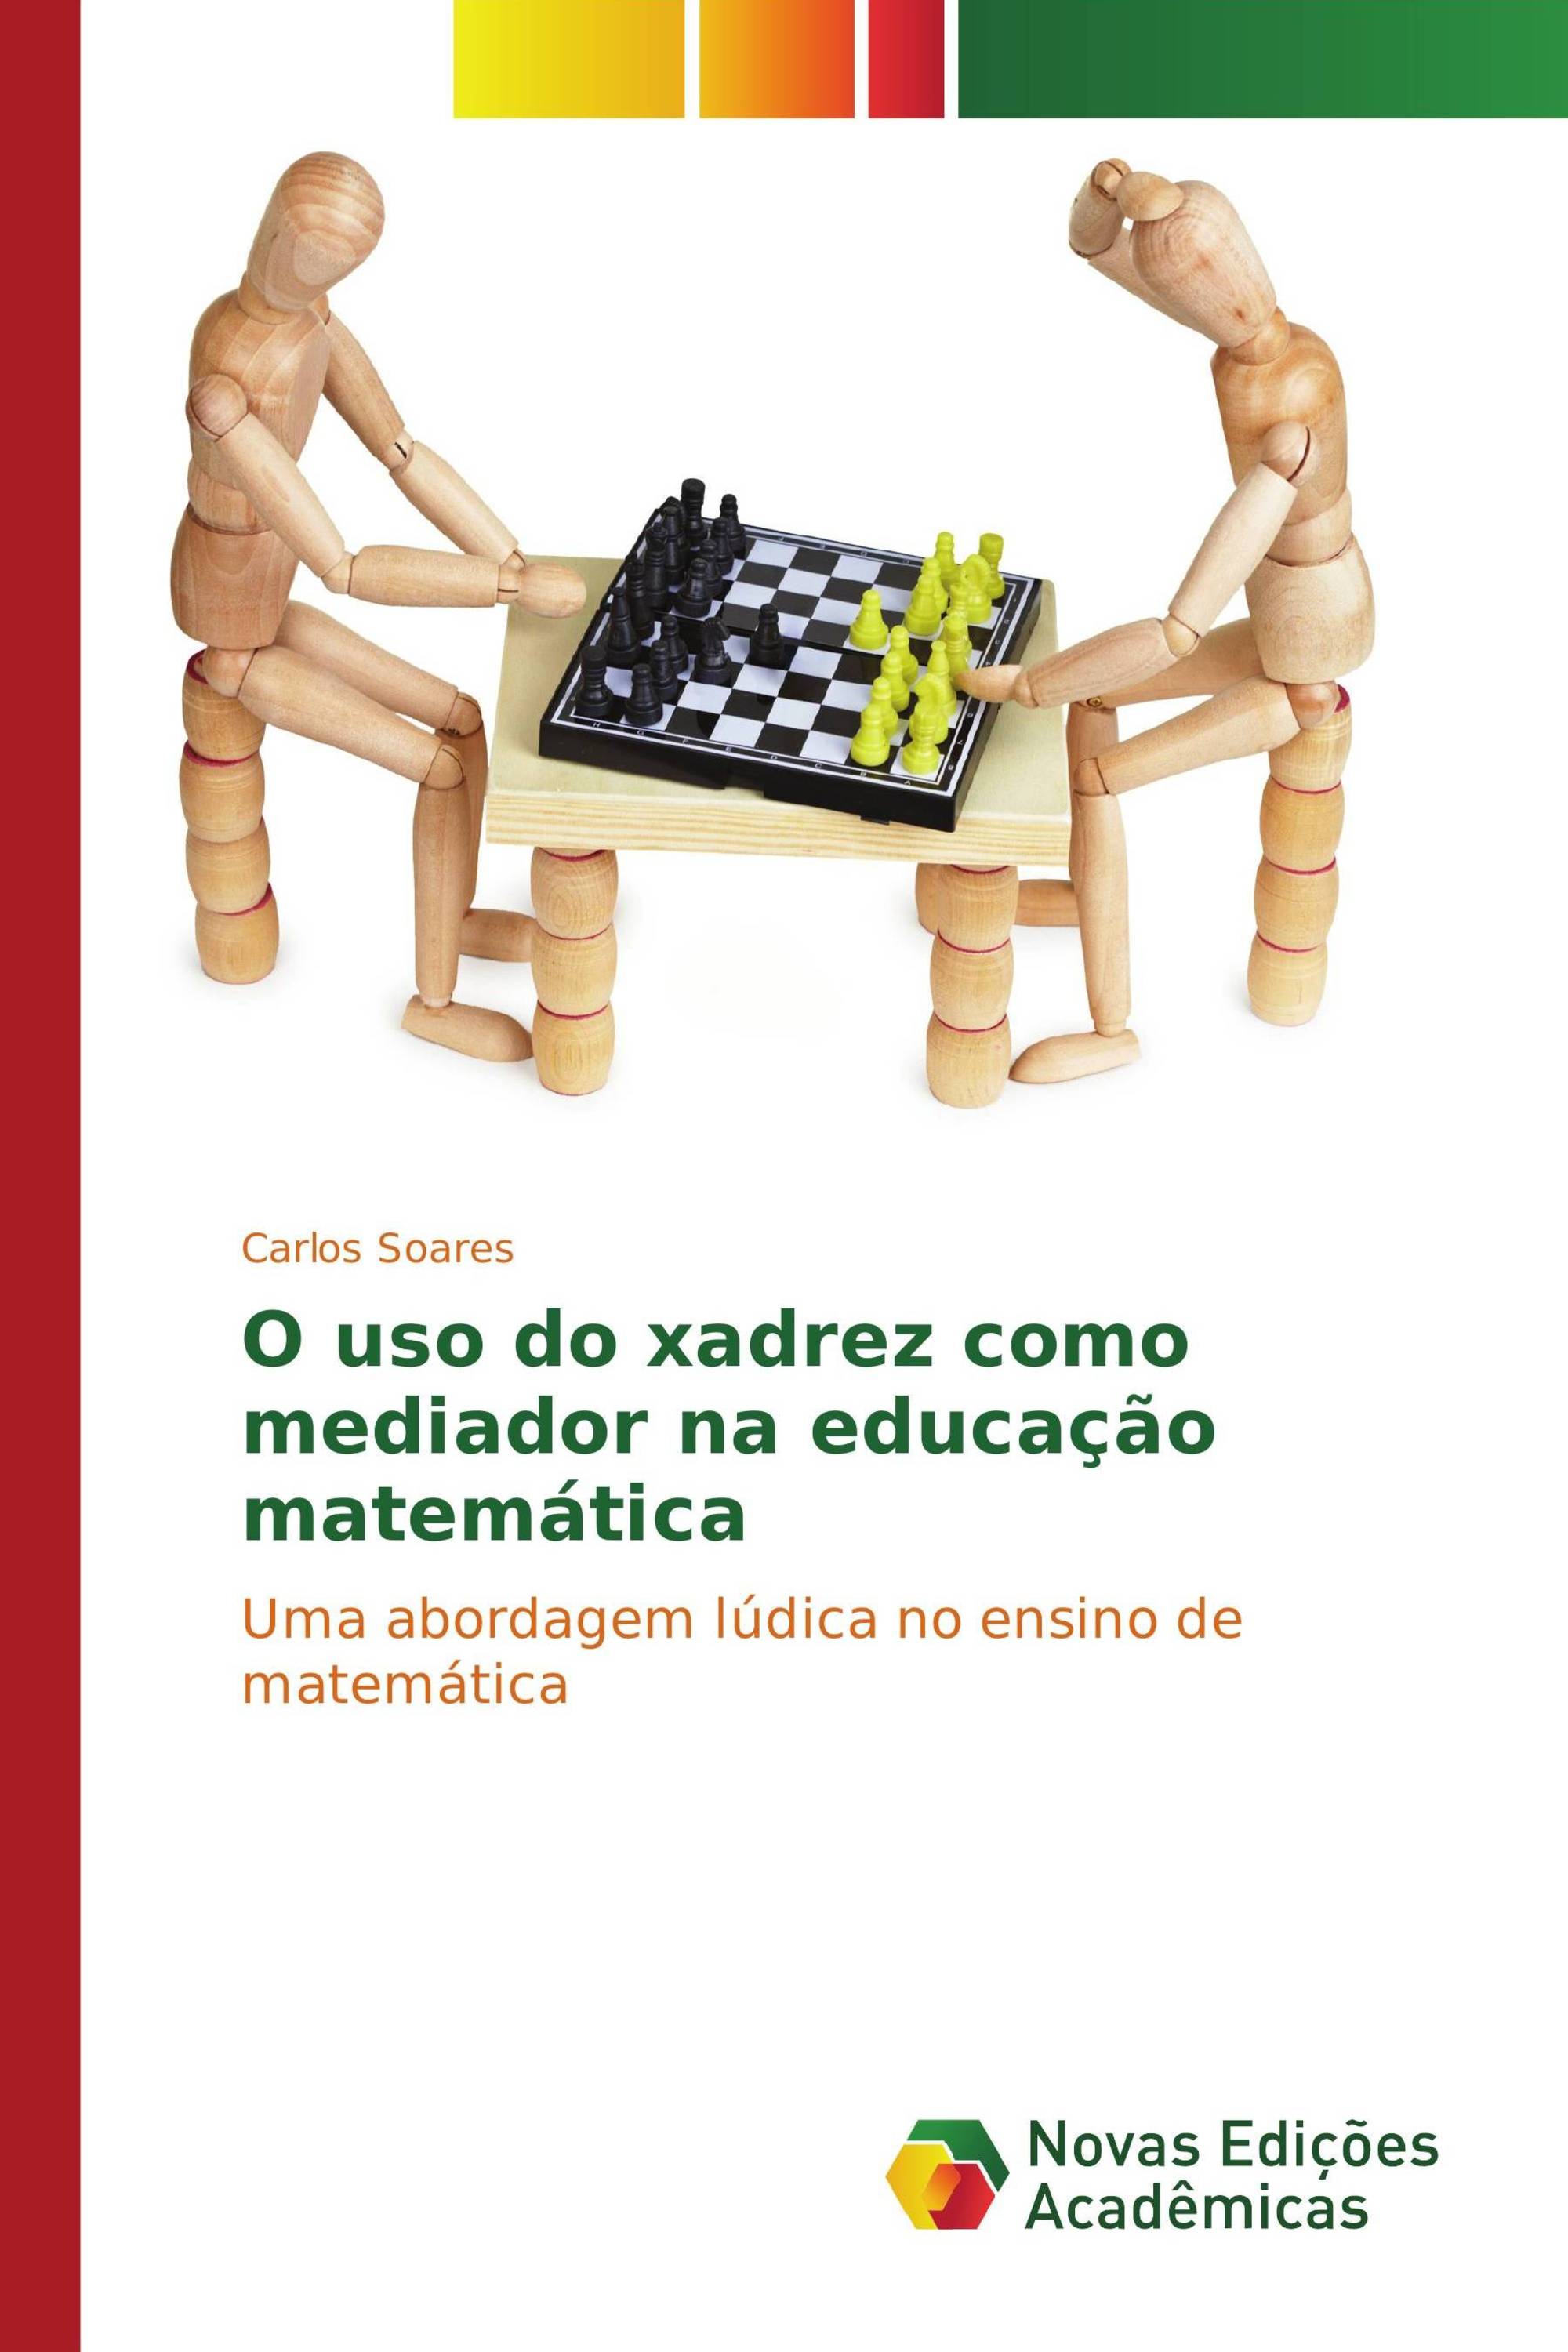 Xadrez e Matemática 